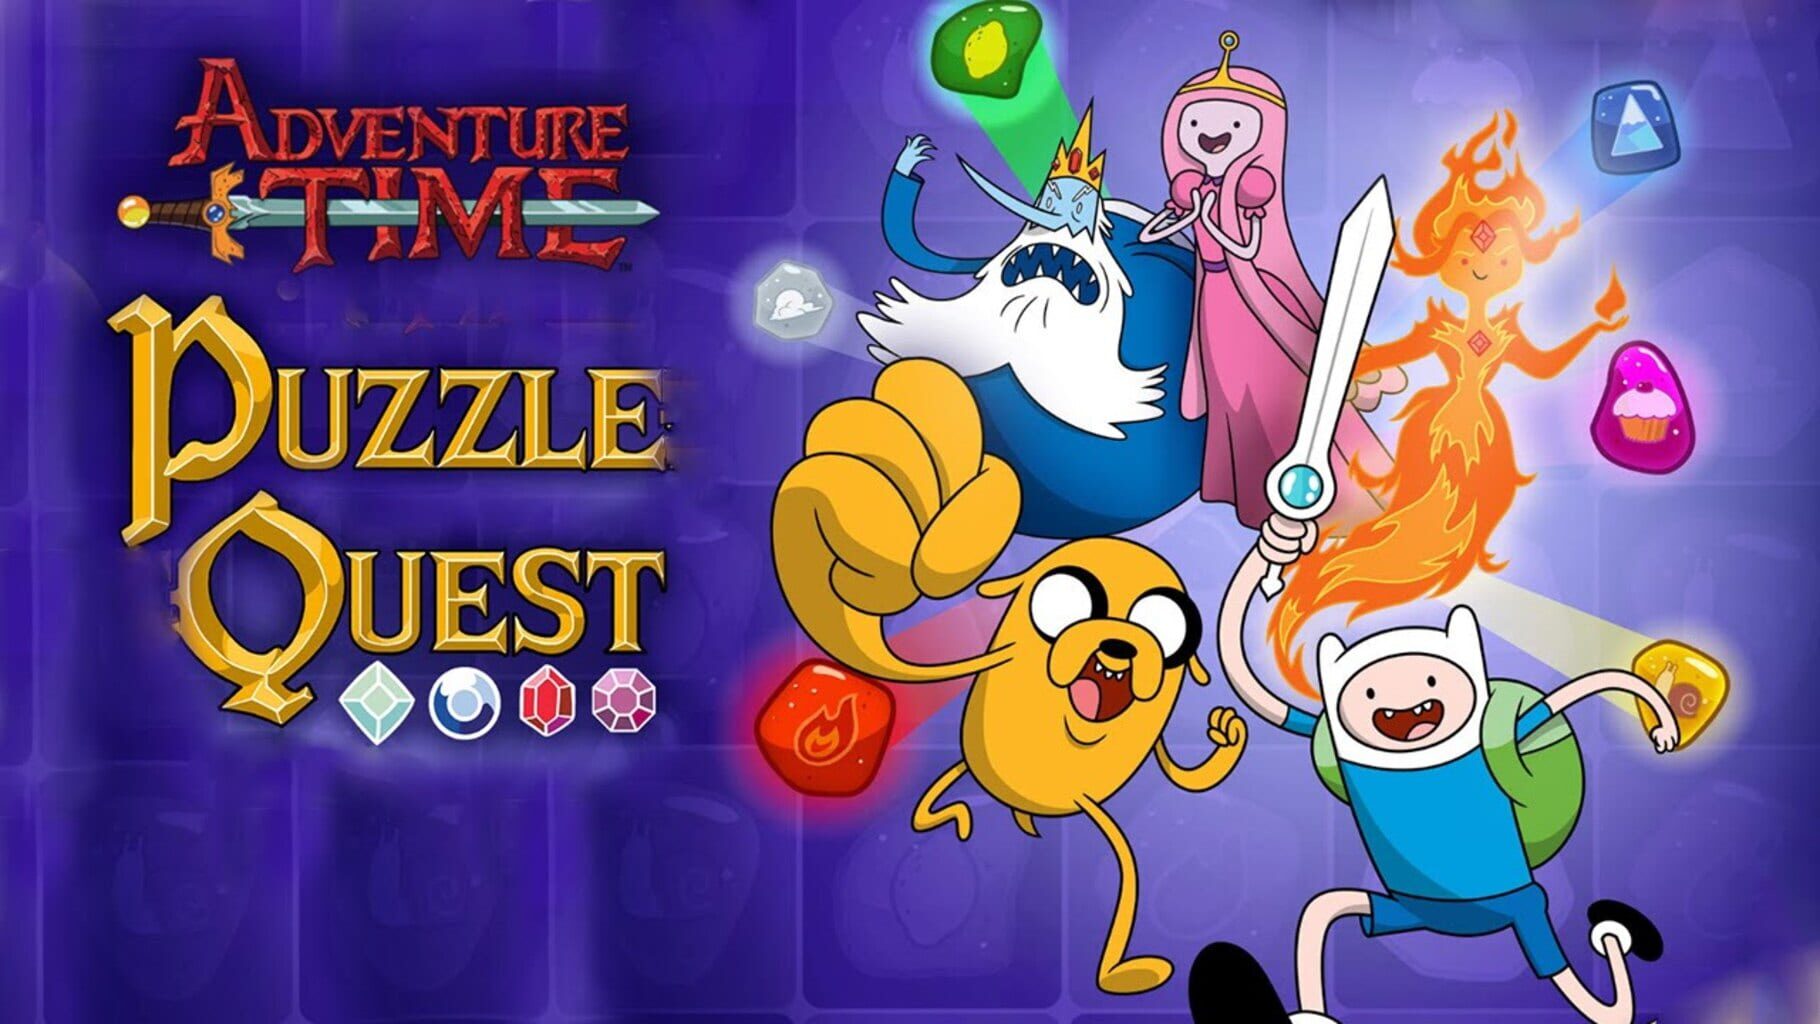 Игра тайм картинки. Игра по Adventure time. Adventure time game Android. Adventure time мобильная игра. Adventure time квест игра.